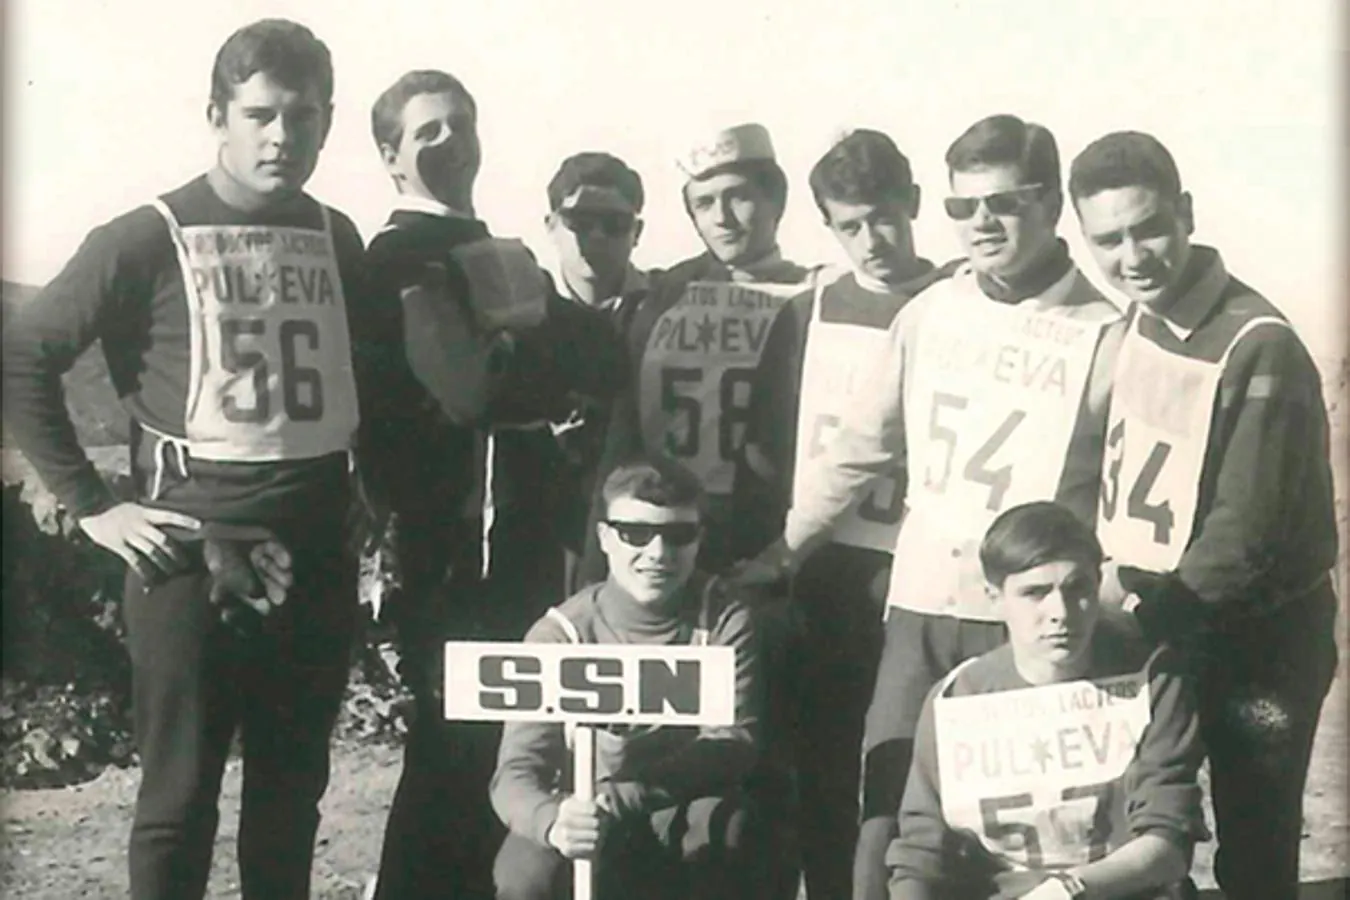 1963. CON SIERRA NEVADA. PULEVA empezó muy pronto a patrocinar pruebas deportivas. En la imagen miembros de la sociedad Sierra Nevada durante una marcha por la Alpujarra con el apoyo de la empresa láctea.